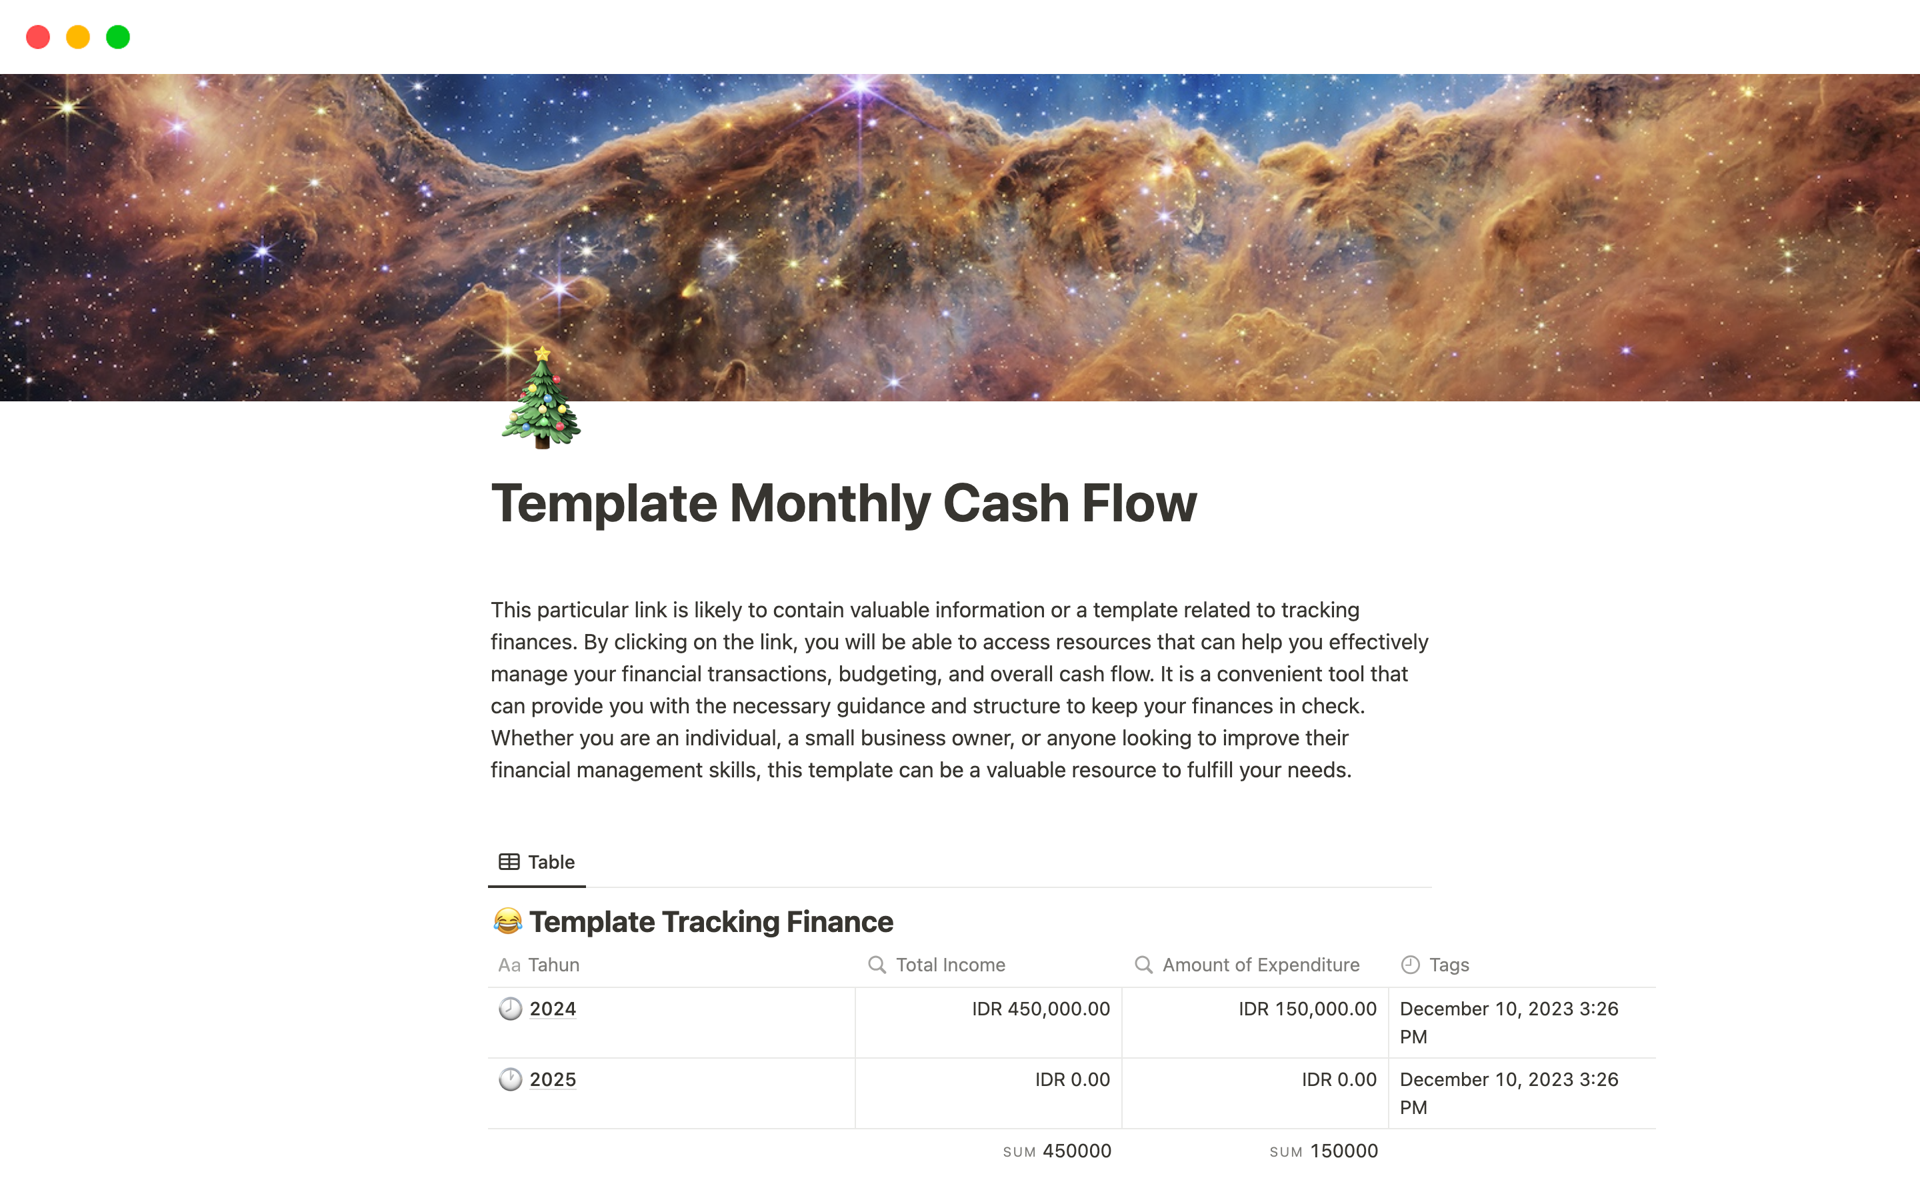 Uma prévia do modelo para Monthly Cash Flow